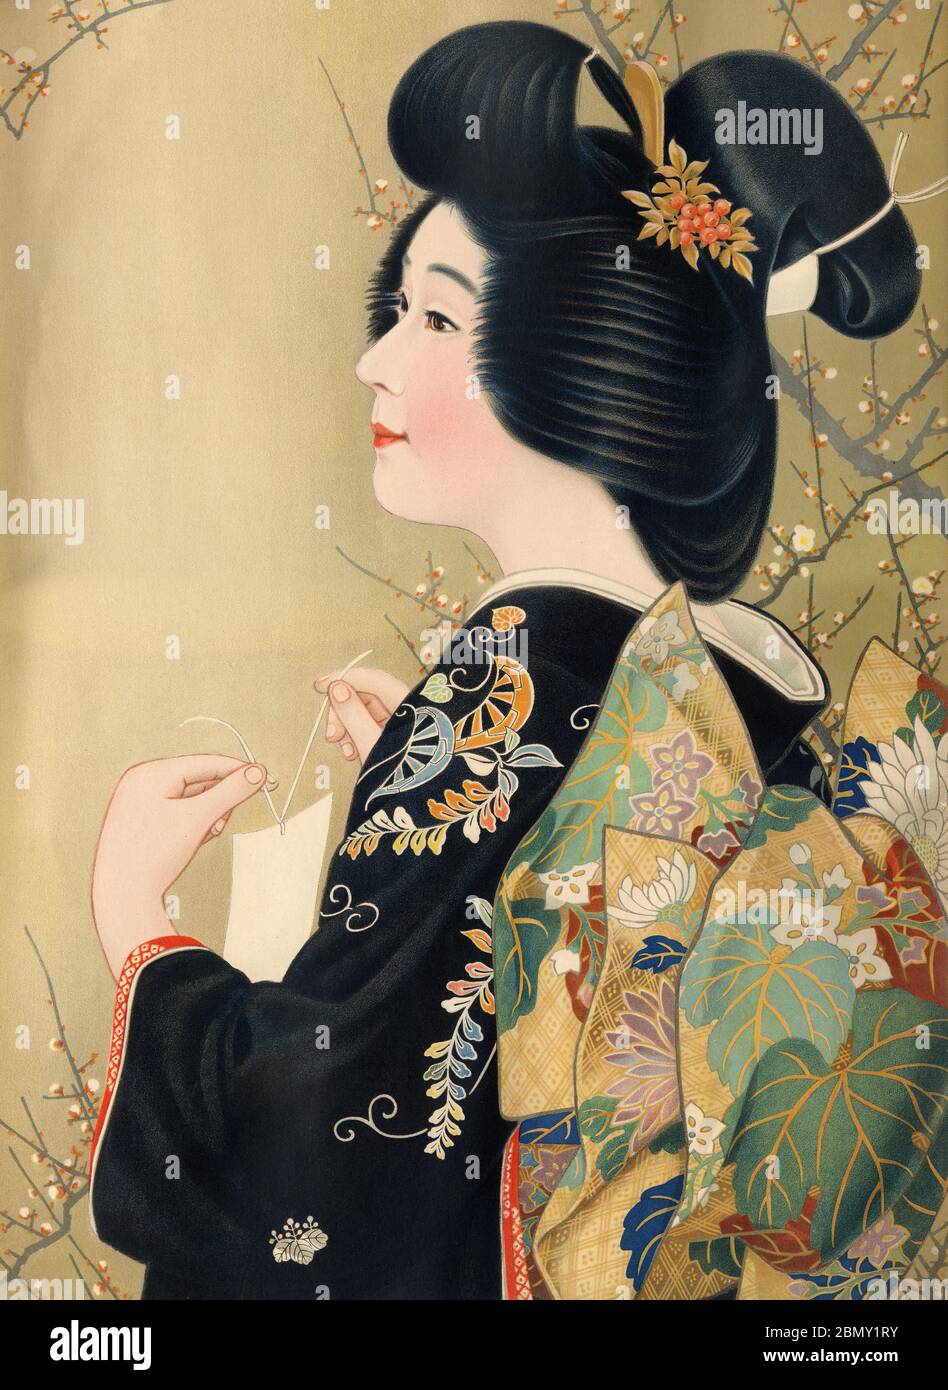 [ 1920er Jahre Japan - Illustration der Japanerin in Kimono ] - schöne Japanerin in Kimono. Dieses Kunstwerk wurde als Plakatmuster (ポスターの原画見本) während der Taisho-Periode (1912-1926) verwendet. Vintage-Poster des 20. Jahrhunderts. Stockfoto